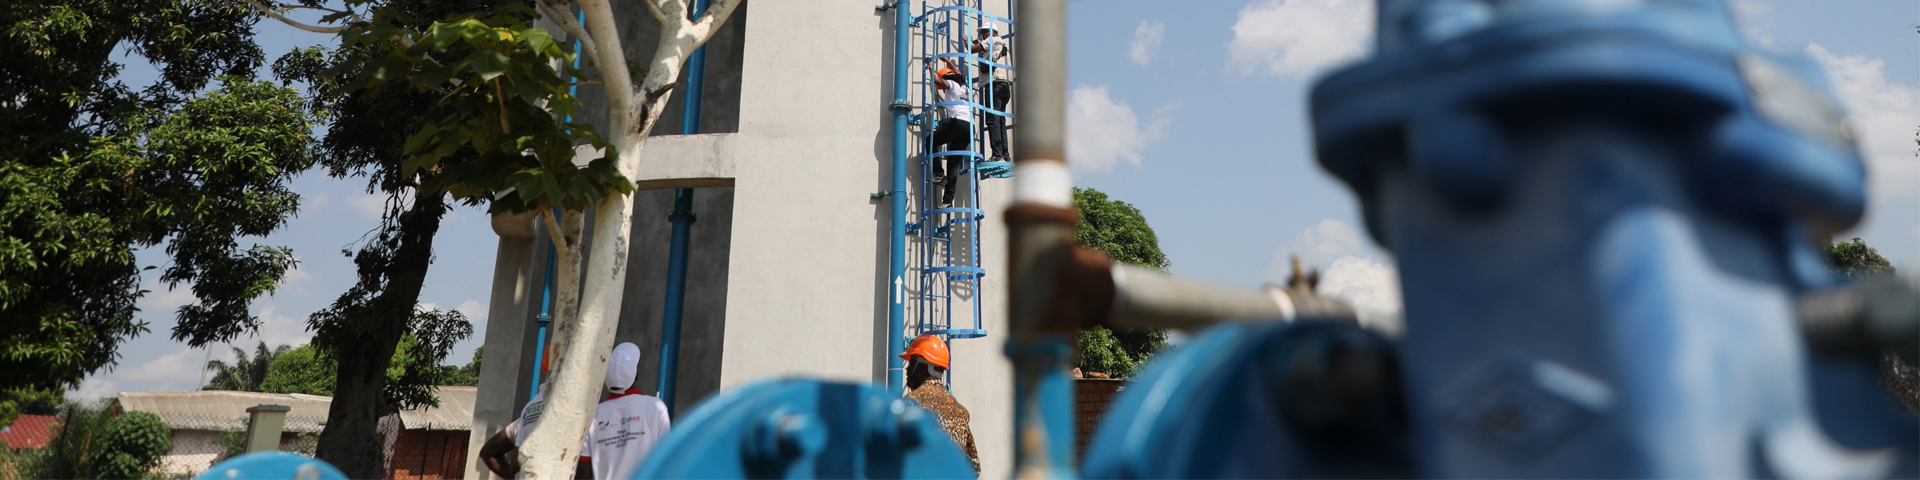 Arbeiter*innen steigen auf einen Wasserturm. © GIZ / Frank Ribas